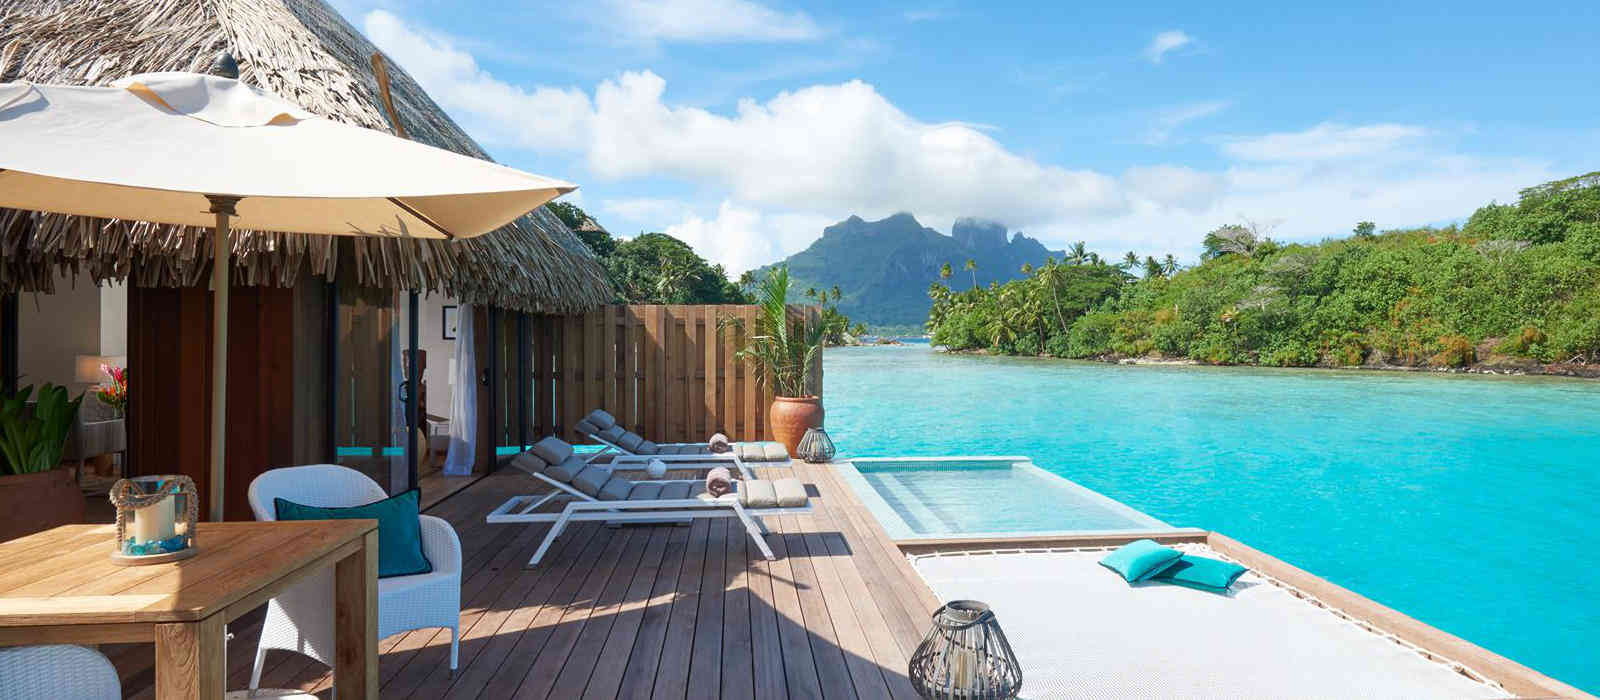 hotel sur pilotis en Polynésie française